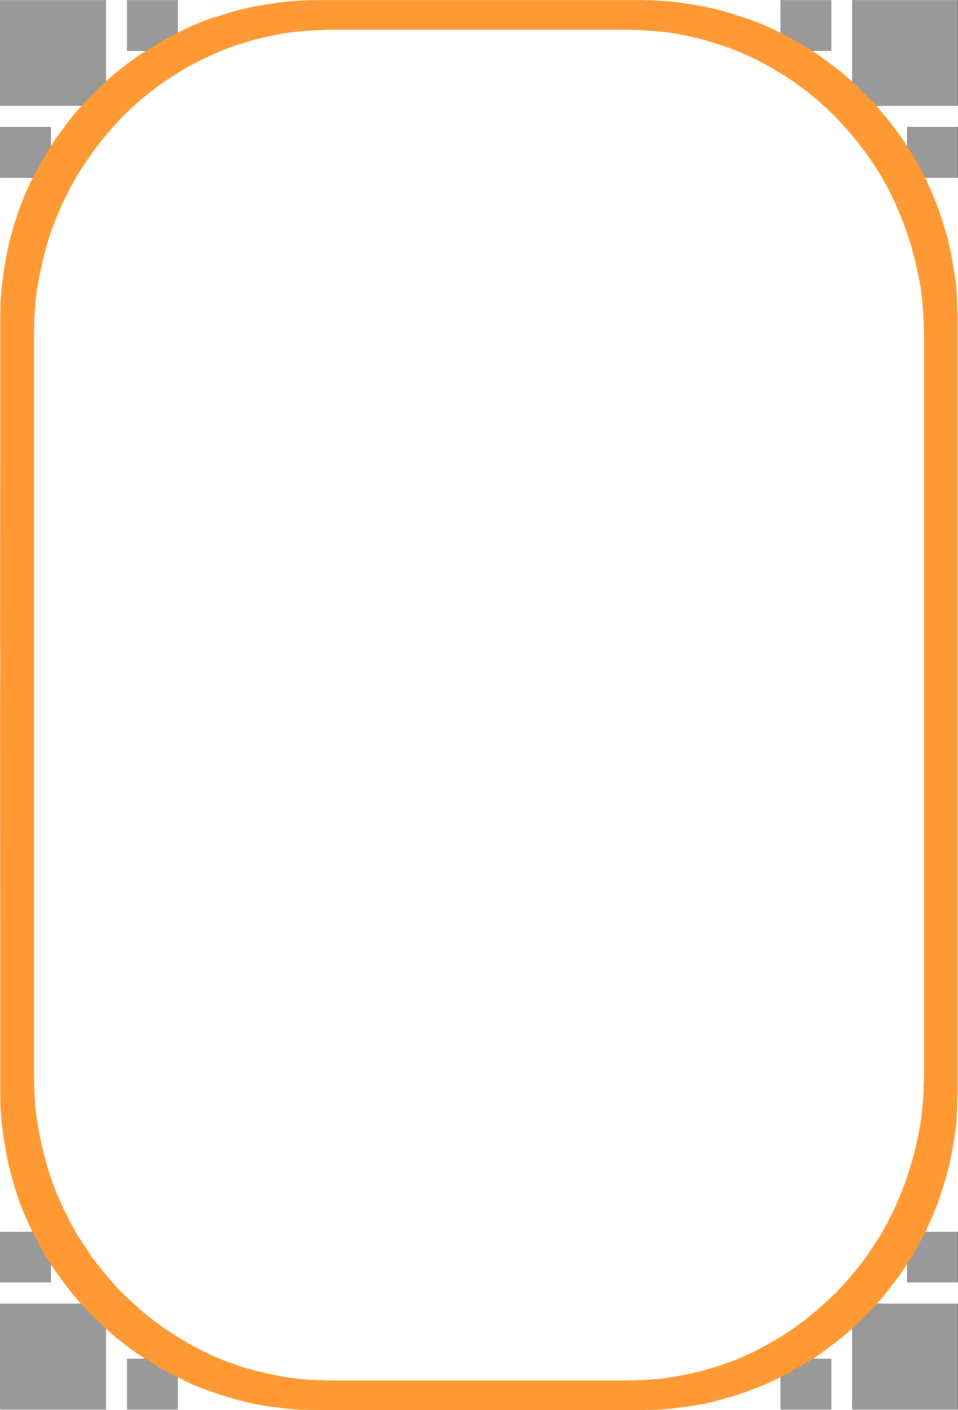 Orange Border Frame Clipart PNG Image